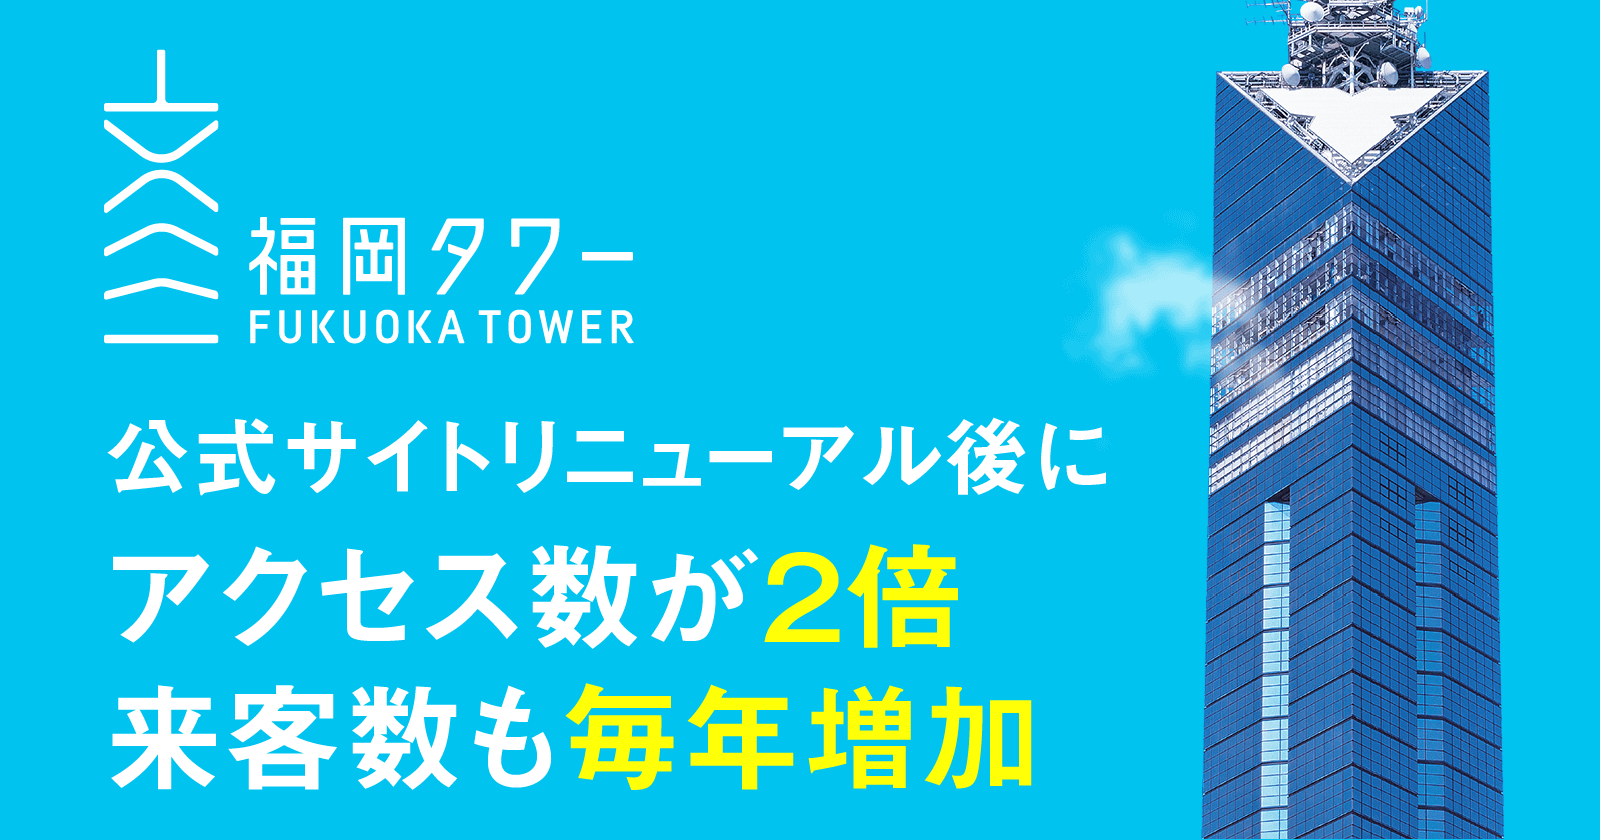 【福岡タワー公式ホームページ】リニューアル後にアクセス数が2倍に！展望者数も毎年増加し続けている理由